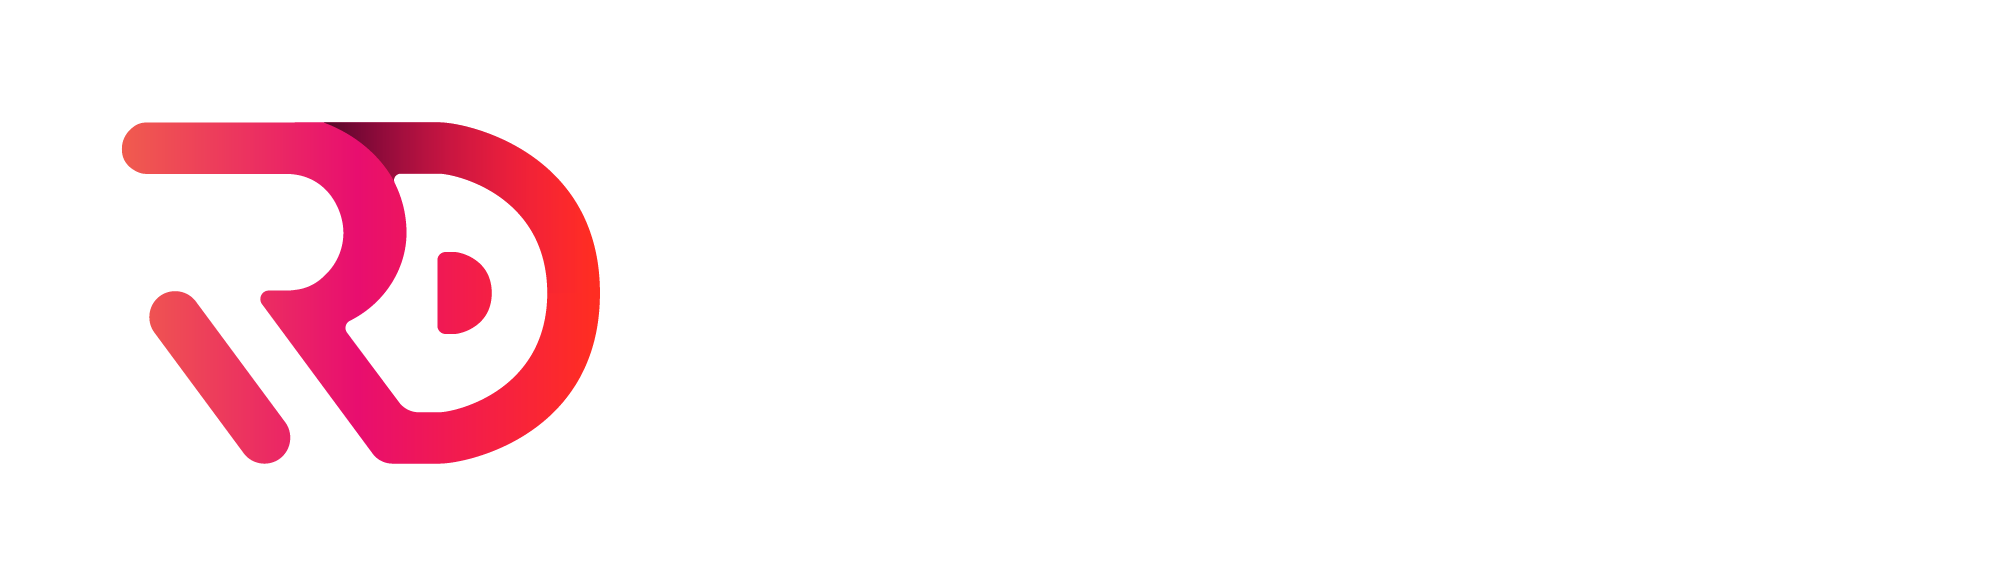 RUNNINGDIGITAL - Logo Horizontal - Slogan - Colorida Negativa